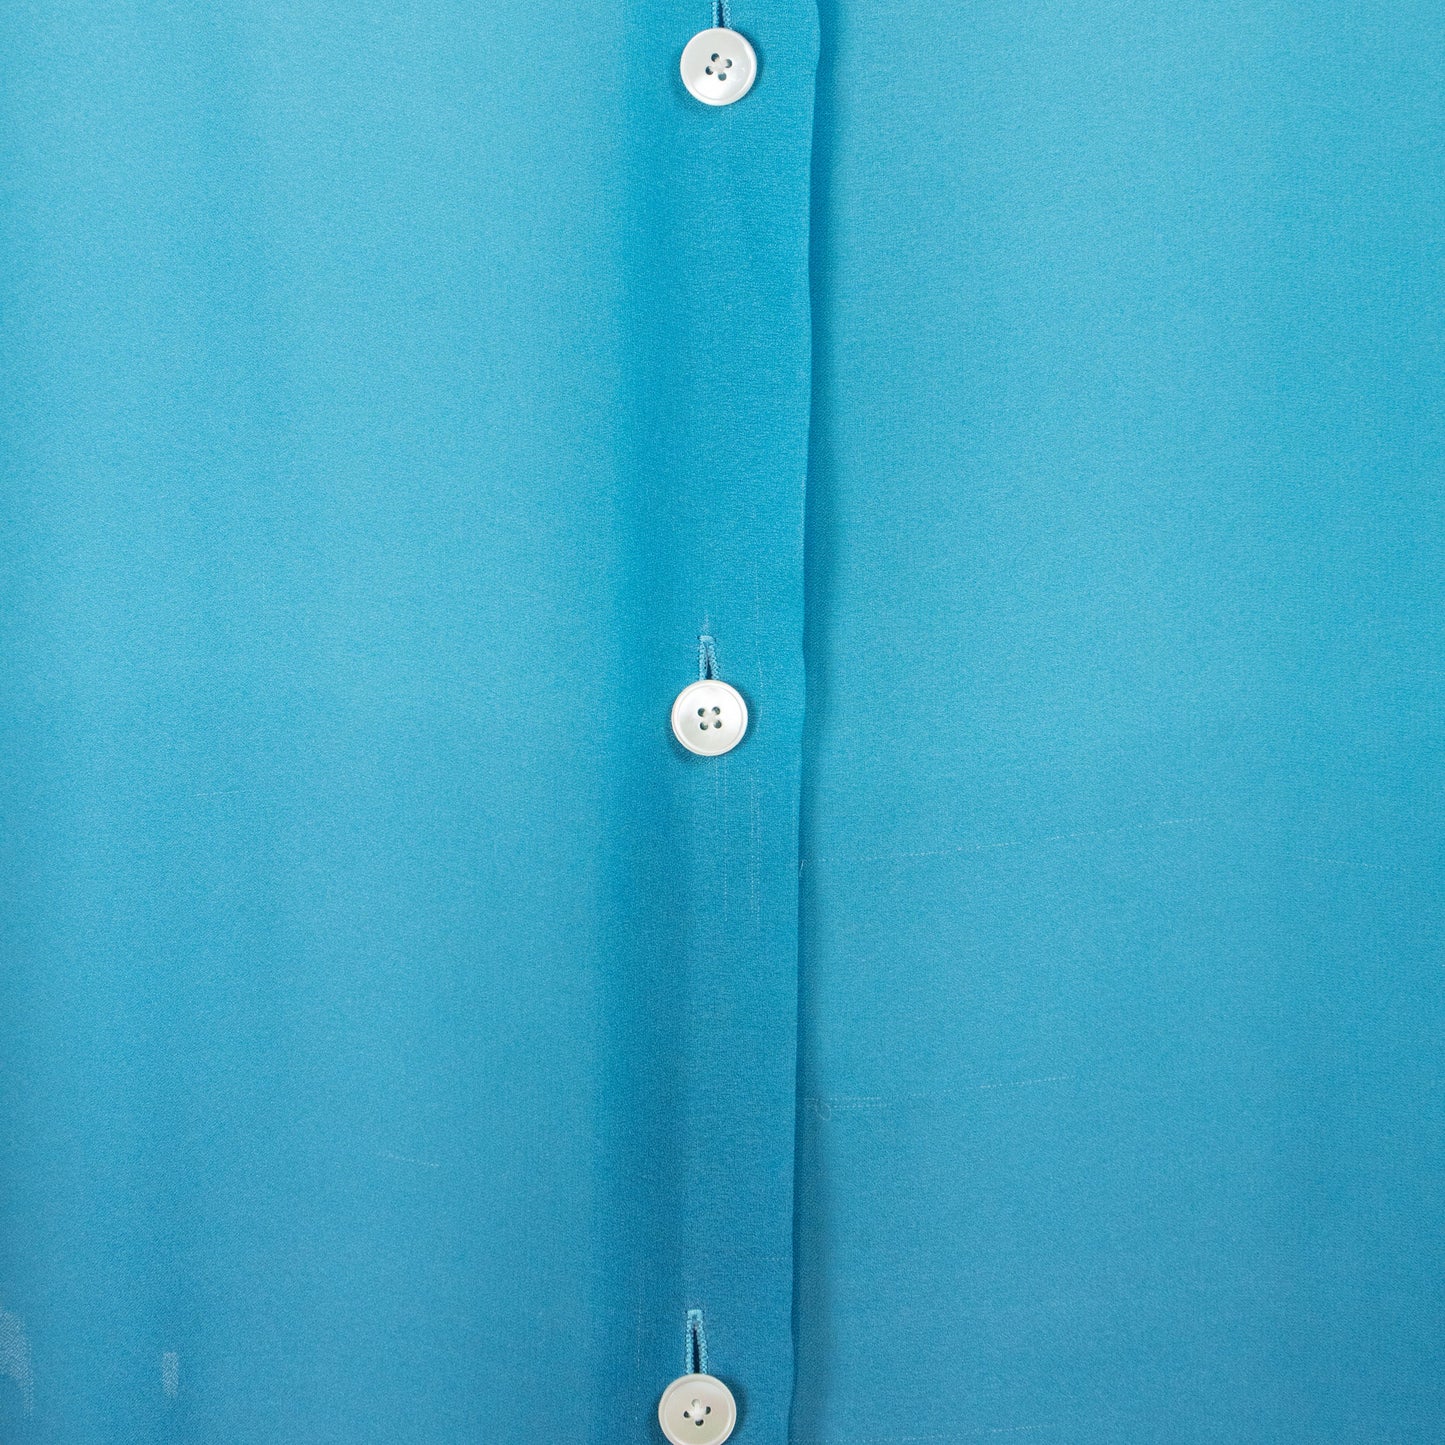 Bluish Silk Shirt